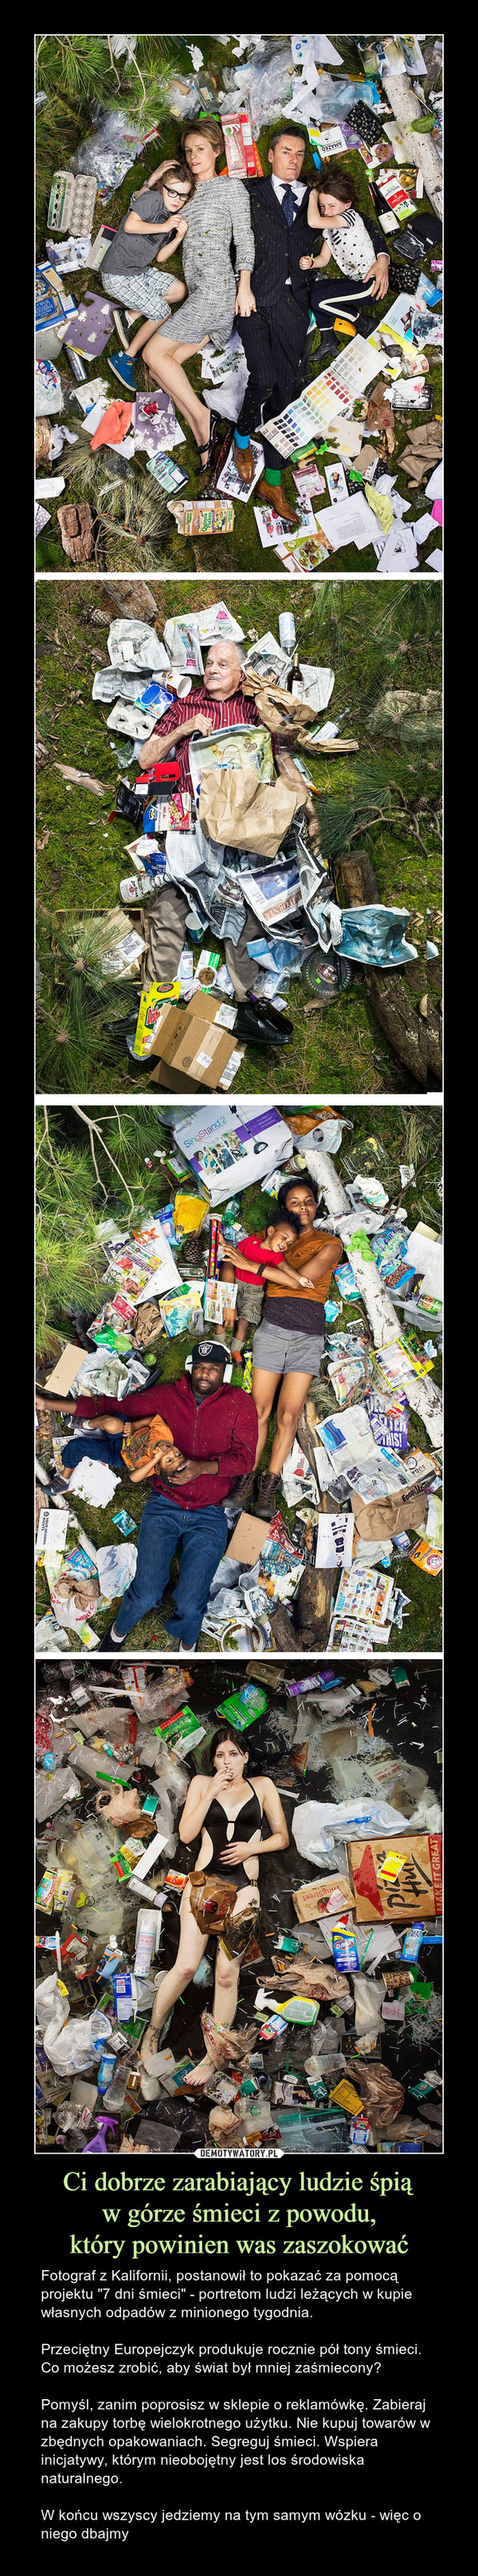 Ci dobrze zarabiający ludzie śpiąw górze śmieci z powodu,który powinien was zaszokować – Fotograf z Kalifornii, postanowił to pokazać za pomocą projektu "7 dni śmieci" - portretom ludzi leżących w kupie własnych odpadów z minionego tygodnia.Przeciętny Europejczyk produkuje rocznie pół tony śmieci. Co możesz zrobić, aby świat był mniej zaśmiecony?Pomyśl, zanim poprosisz w sklepie o reklamówkę. Zabieraj na zakupy torbę wielokrotnego użytku. Nie kupuj towarów w zbędnych opakowaniach. Segreguj śmieci. Wspiera inicjatywy, którym nieobojętny jest los środowiska naturalnego.W końcu wszyscy jedziemy na tym samym wózku - więc o niego dbajmy 